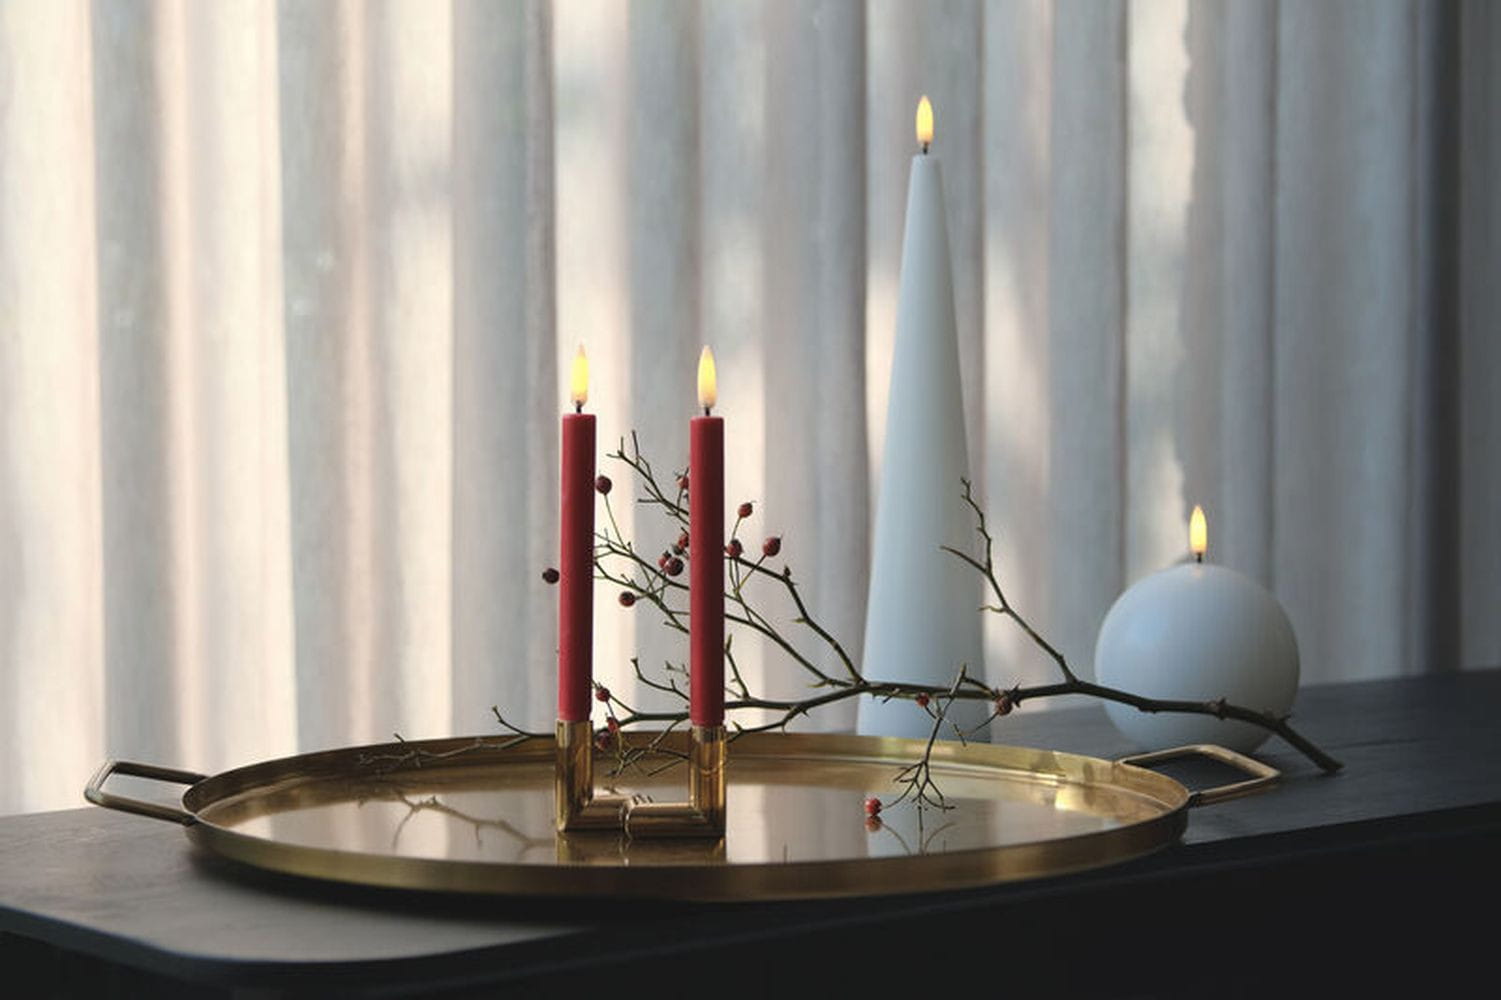 Uyuni Lighting Round Led Candle 3 D Flamme 10 cm, nordisches Weiß